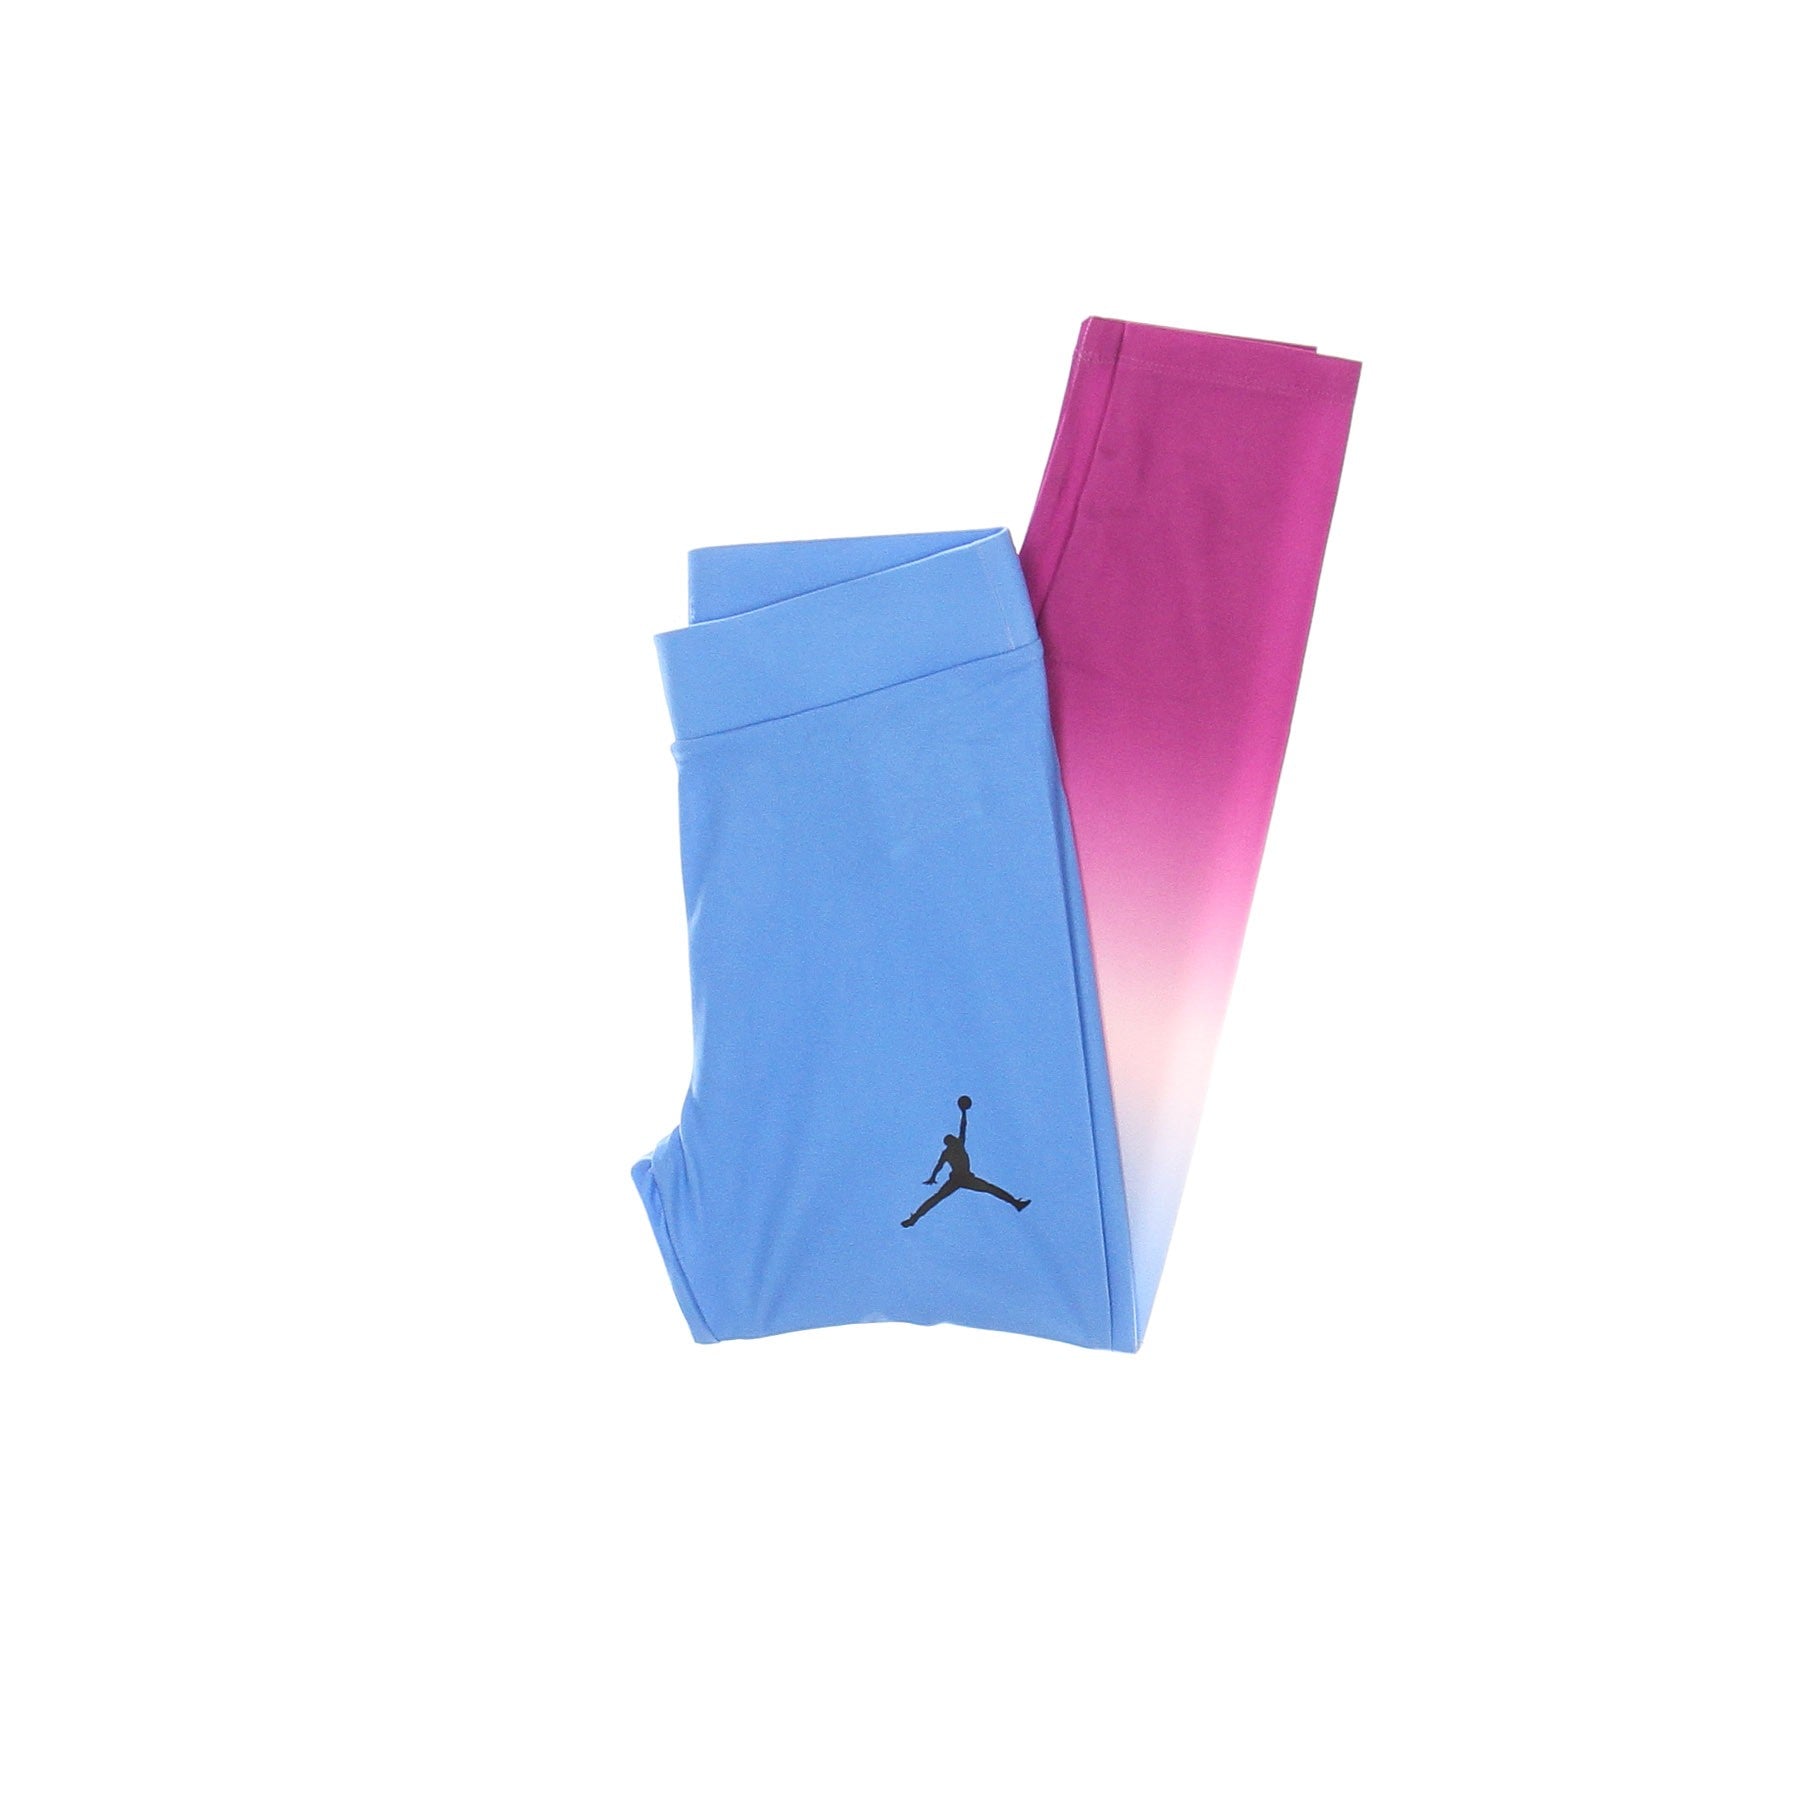 Jordan, Leggins Ragazza Essentials Legging, Hyper Violet